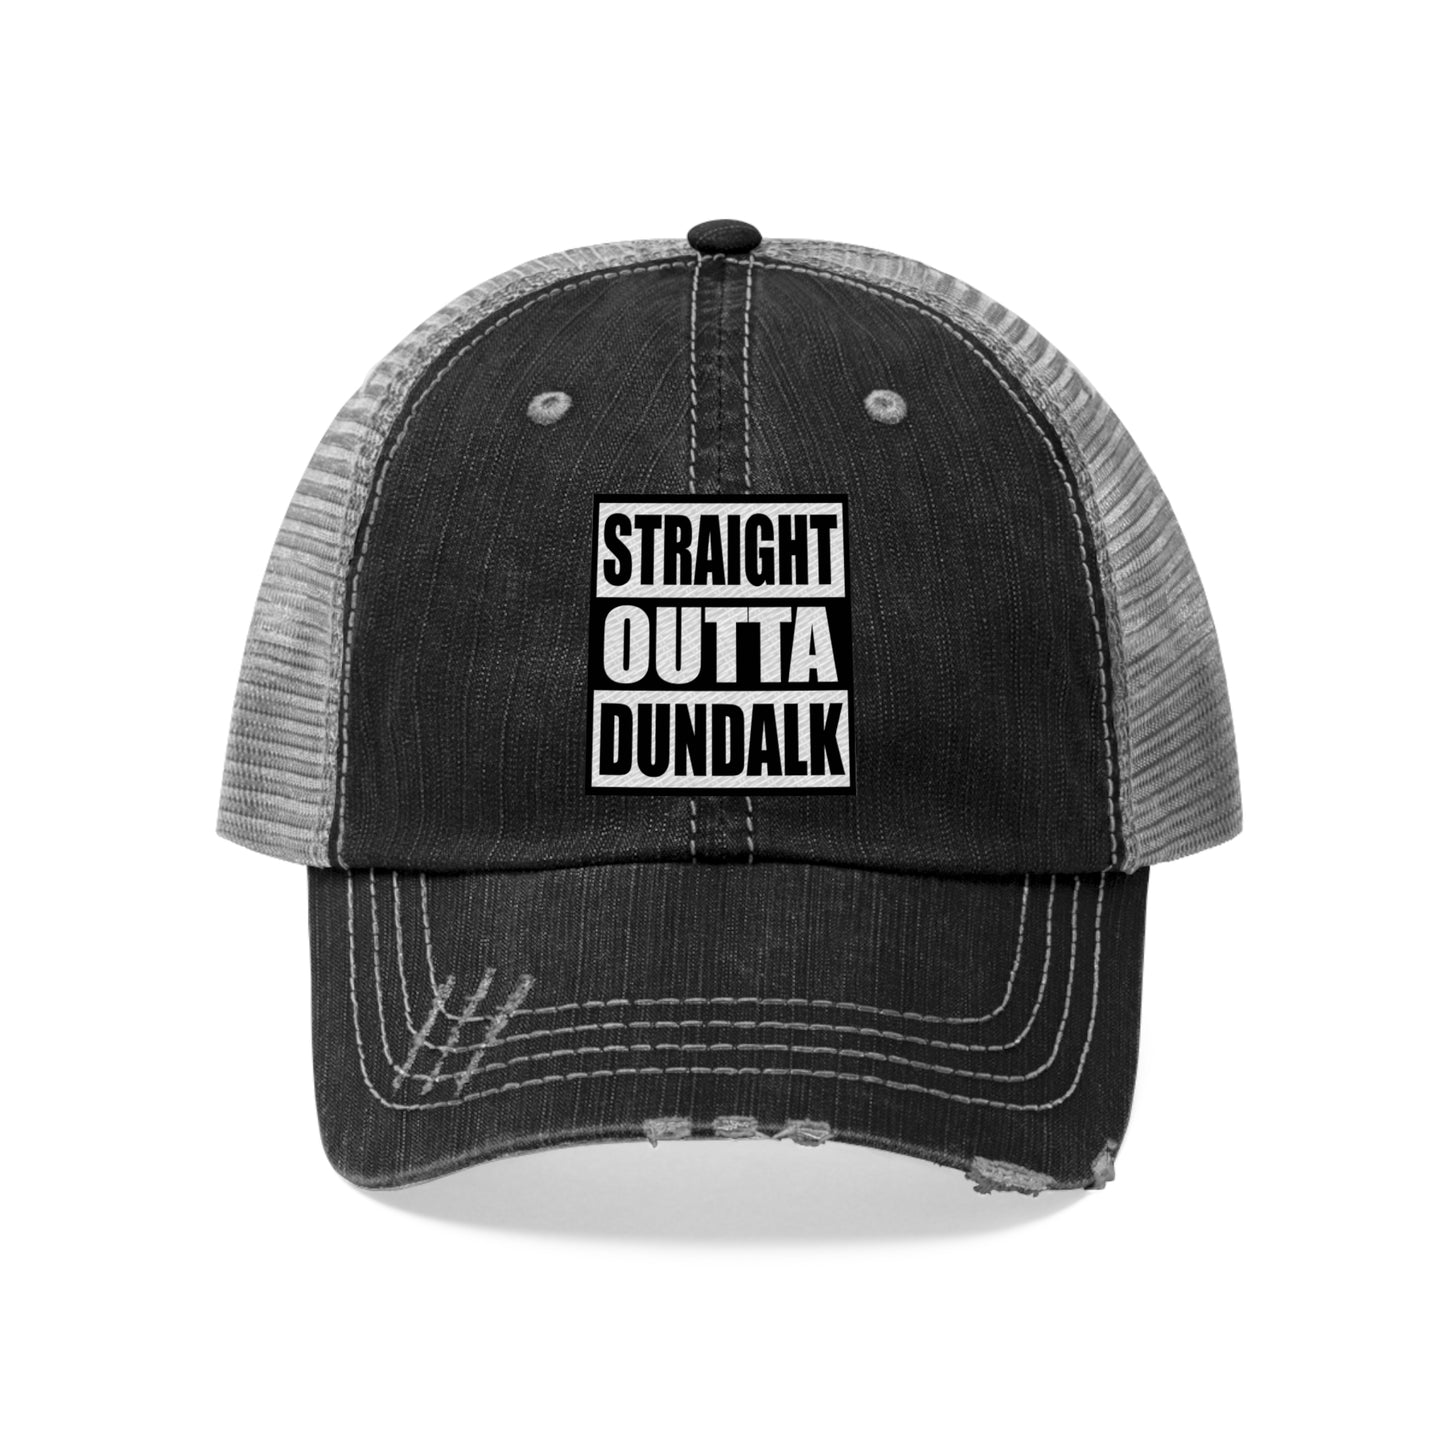 Straight Outta Dundalk Trucker Hat